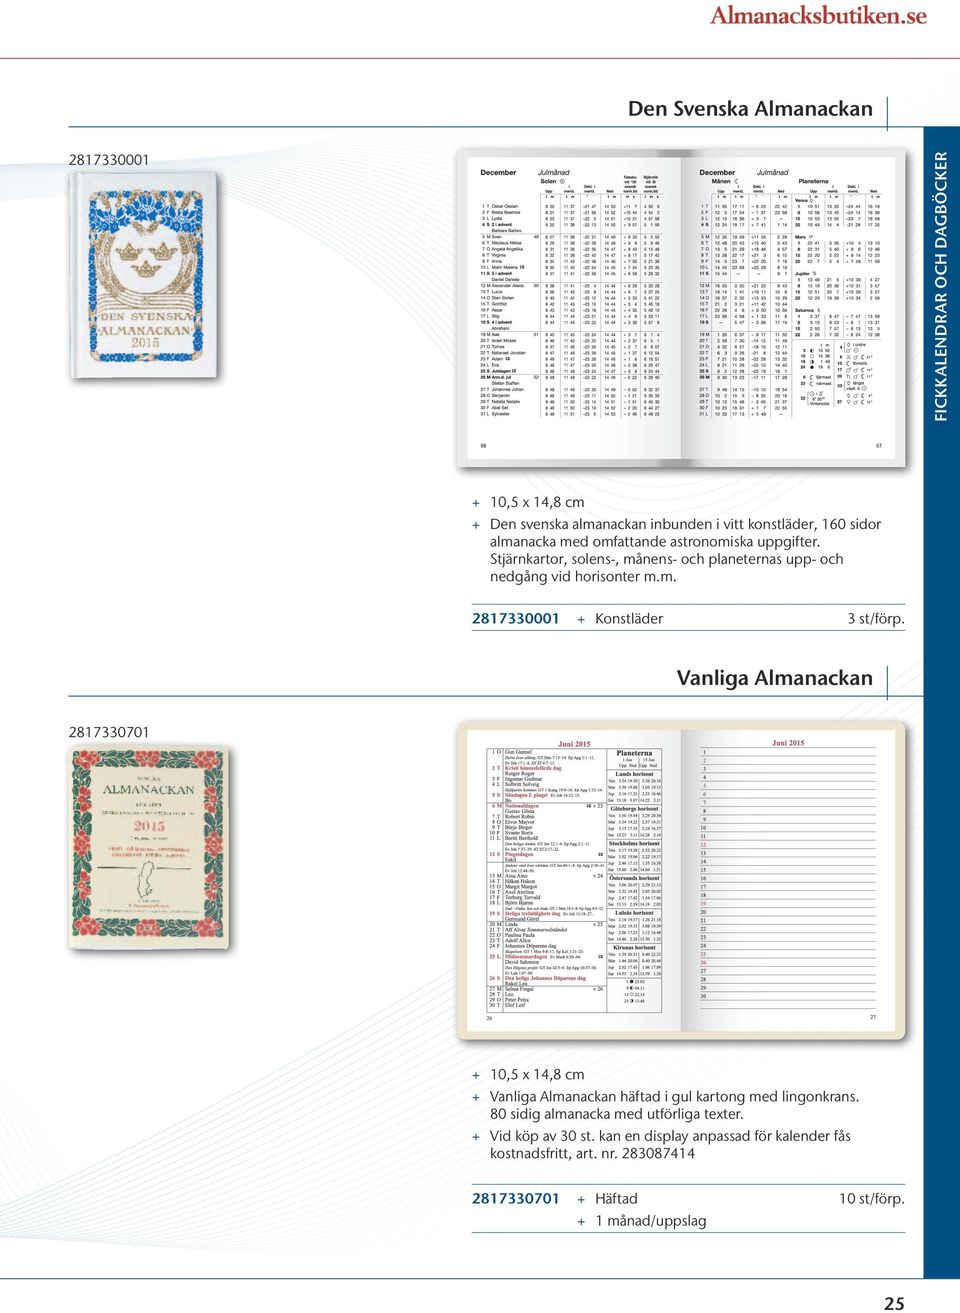 80 sidig almanacka med utförliga texter. + + Vid köp av 30 st. kan en display anpassad för kalender fås kostnadsfritt, art. nr.